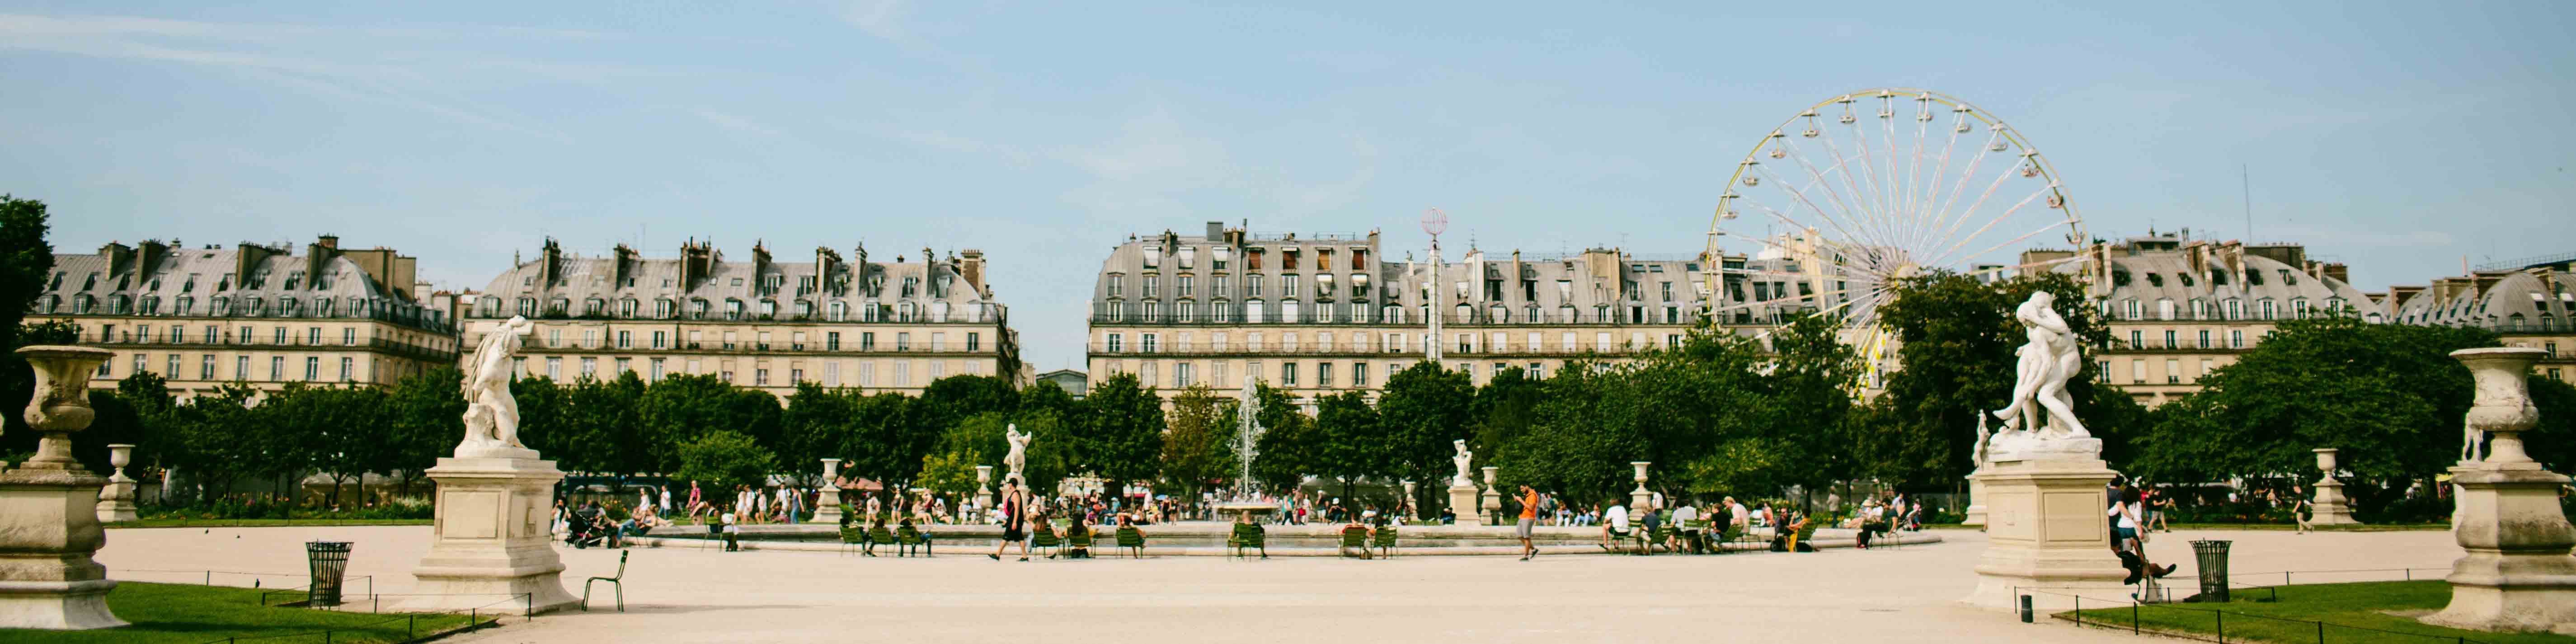 Arty Paris Porte de Versailles by River Hotels 